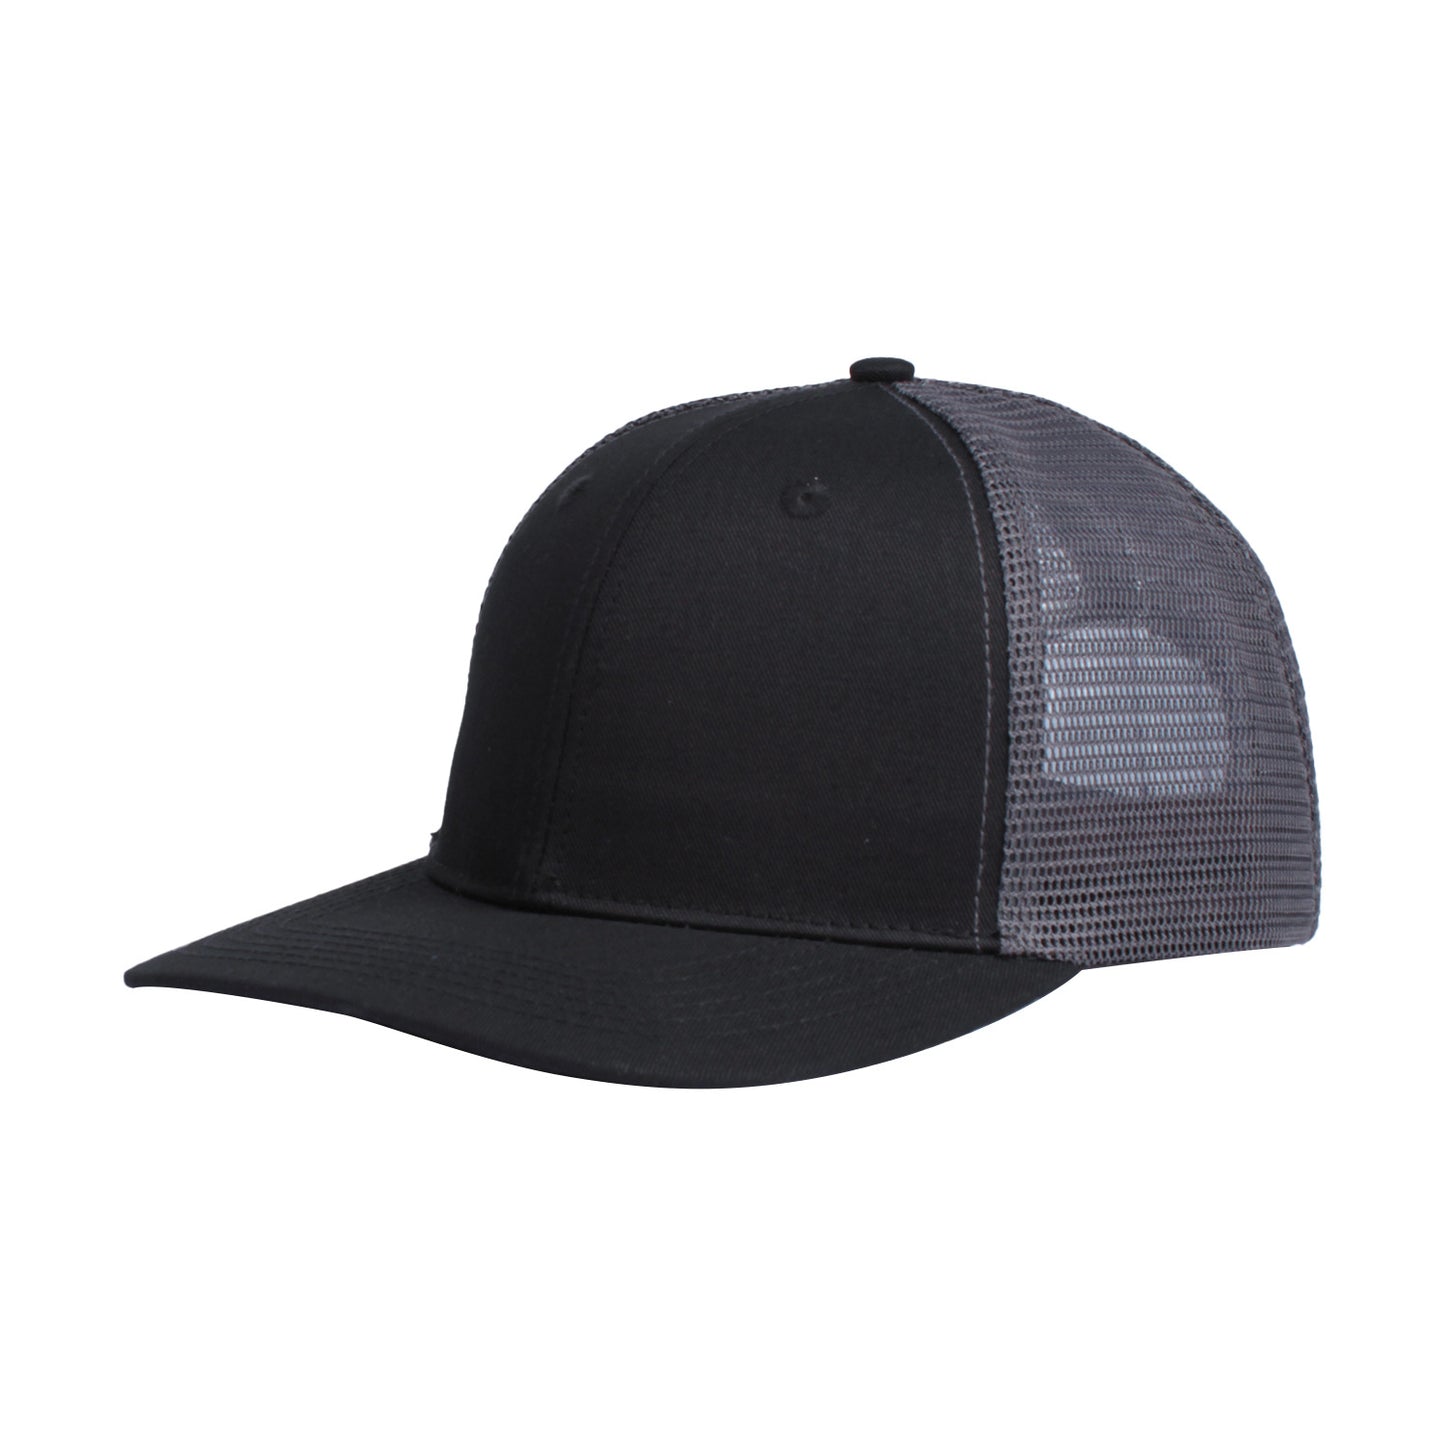 Half Mesh Hip Hop Hat, Customizable Logo/Text/Image.